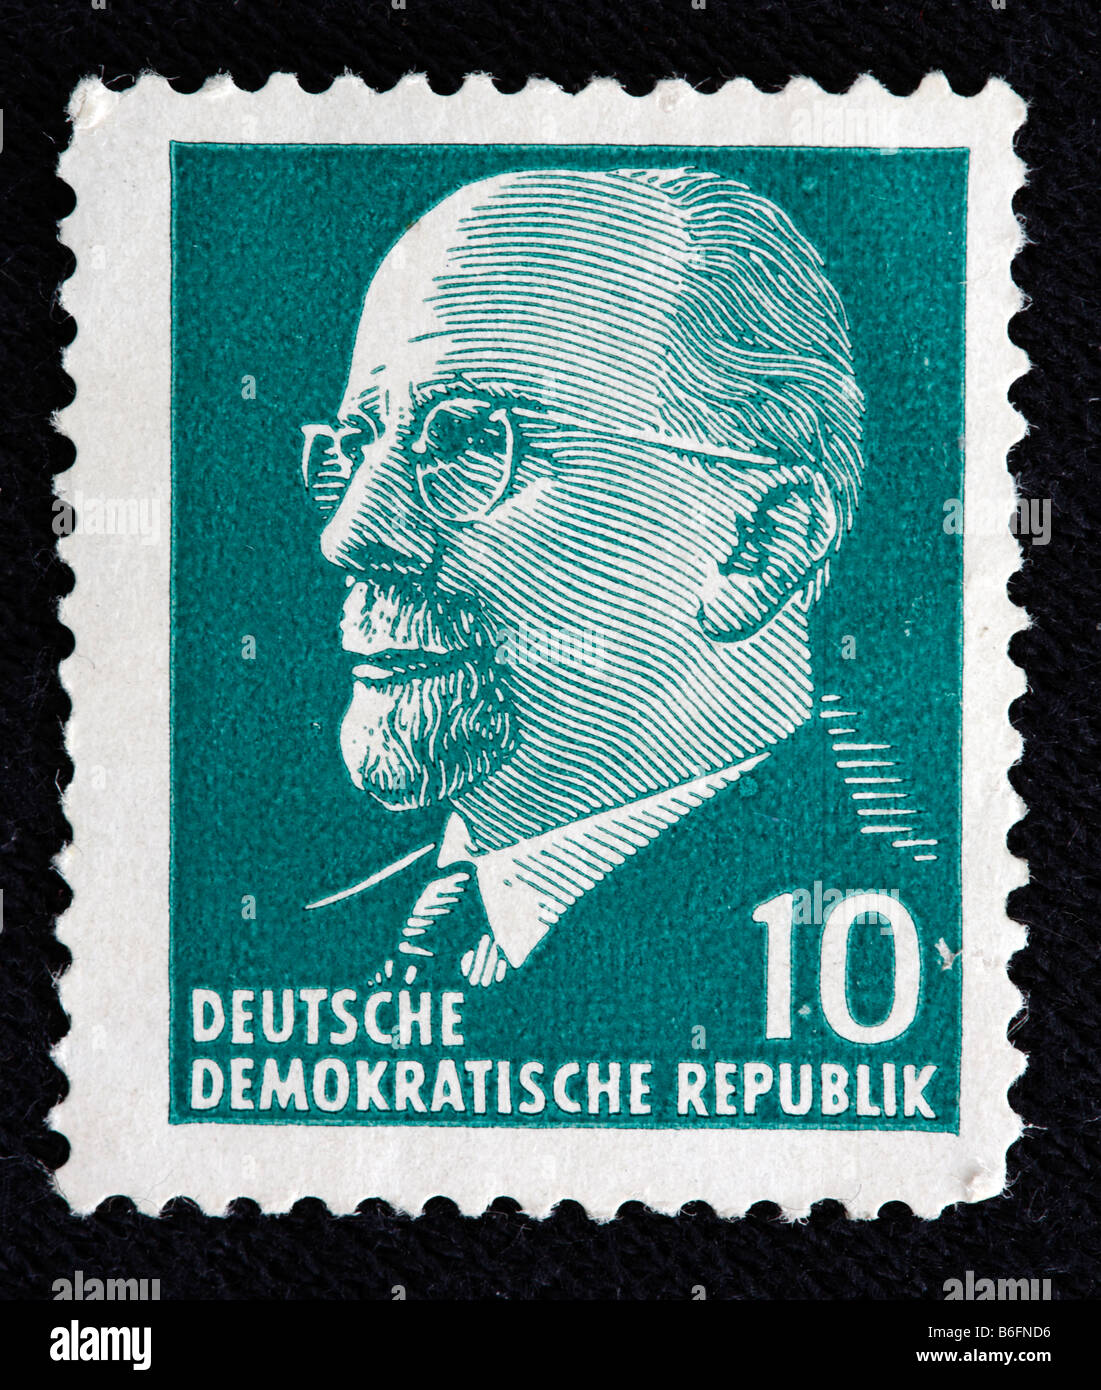 Walter Ulbricht, Generalsekretär der SED (1950 – 1971), Deutsche Demokratische Republik, Stempel, Deutschland Stockfoto